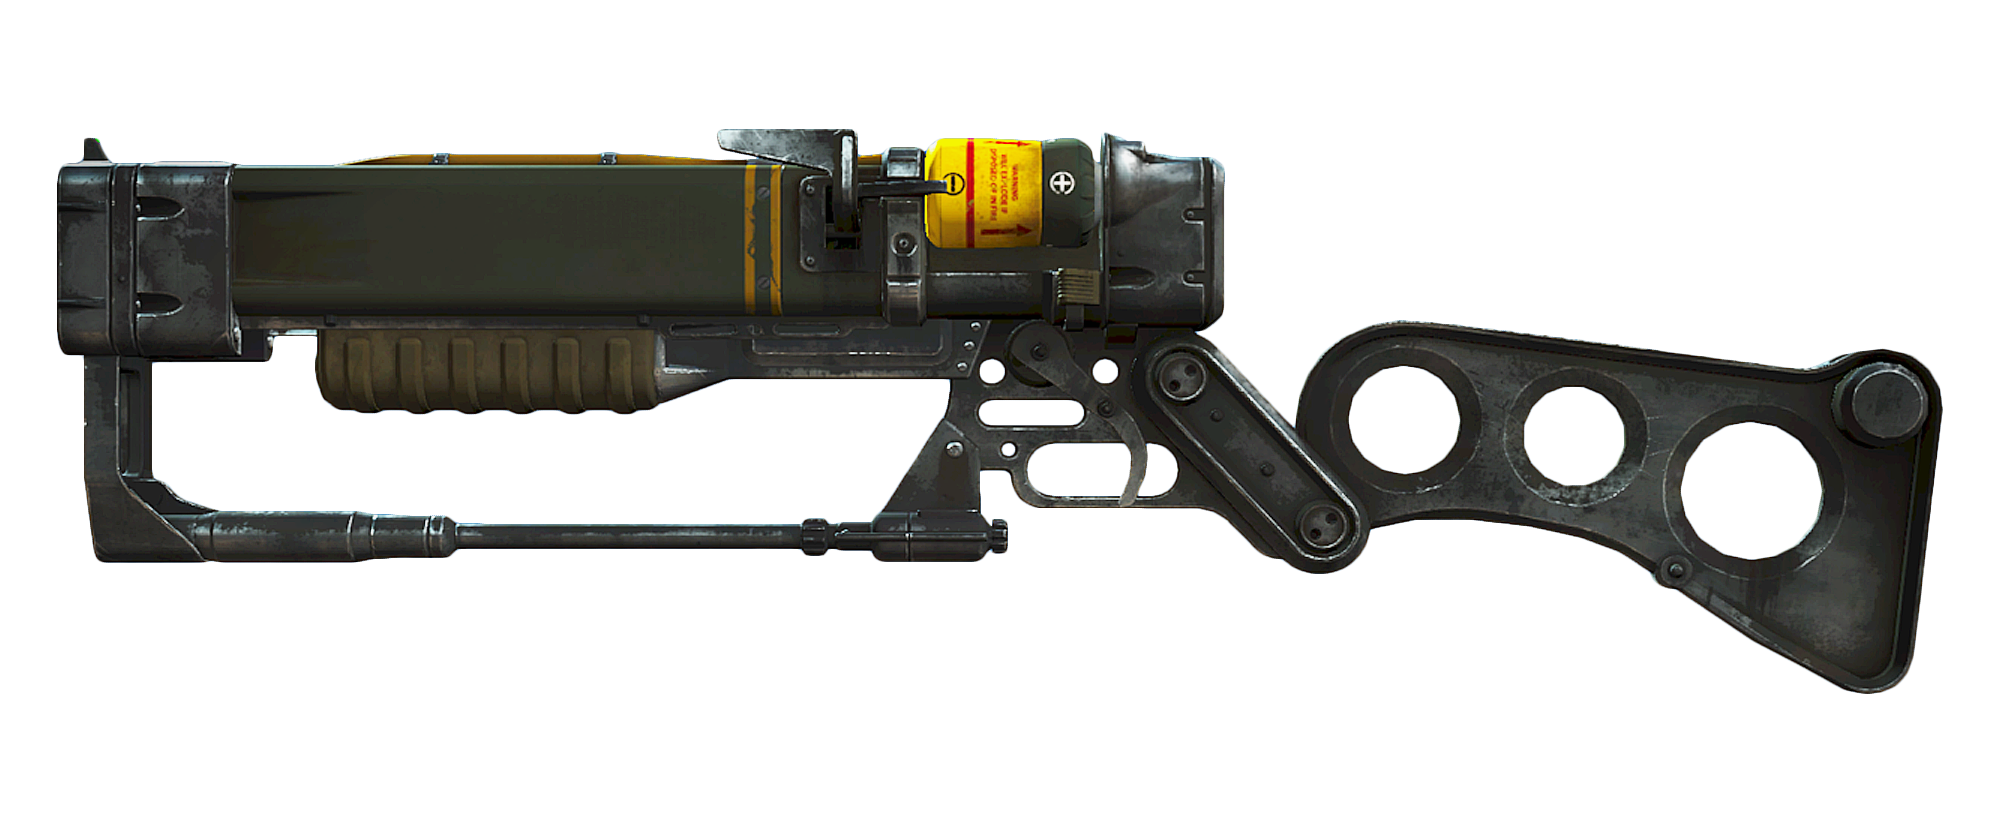 лазерный пистолет из fallout 4 фото 19